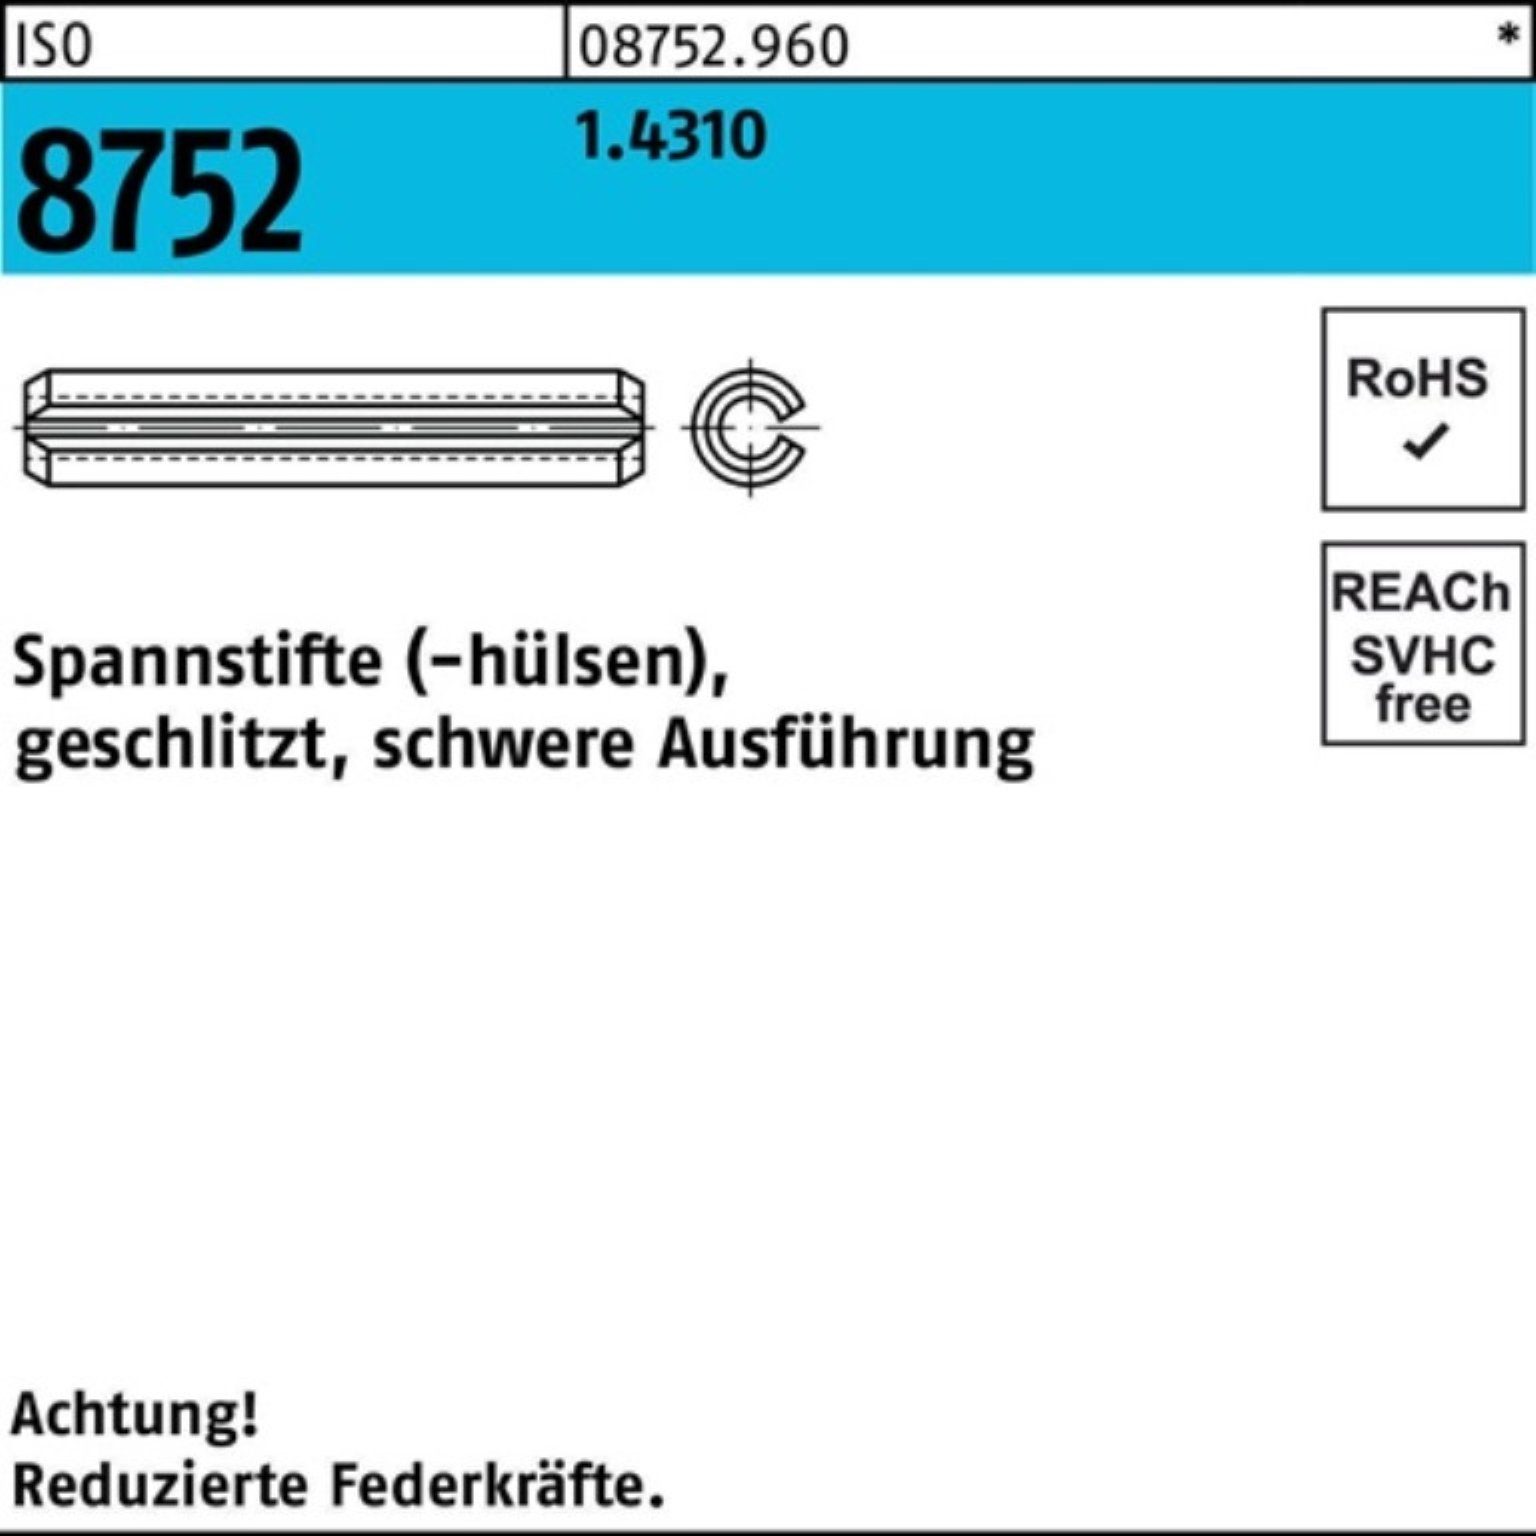 Reyher Pack Ausf. 12 Spannstift 8752 geschlitzt schwere ISO 100er 1 1.4310 Spannstift 2x